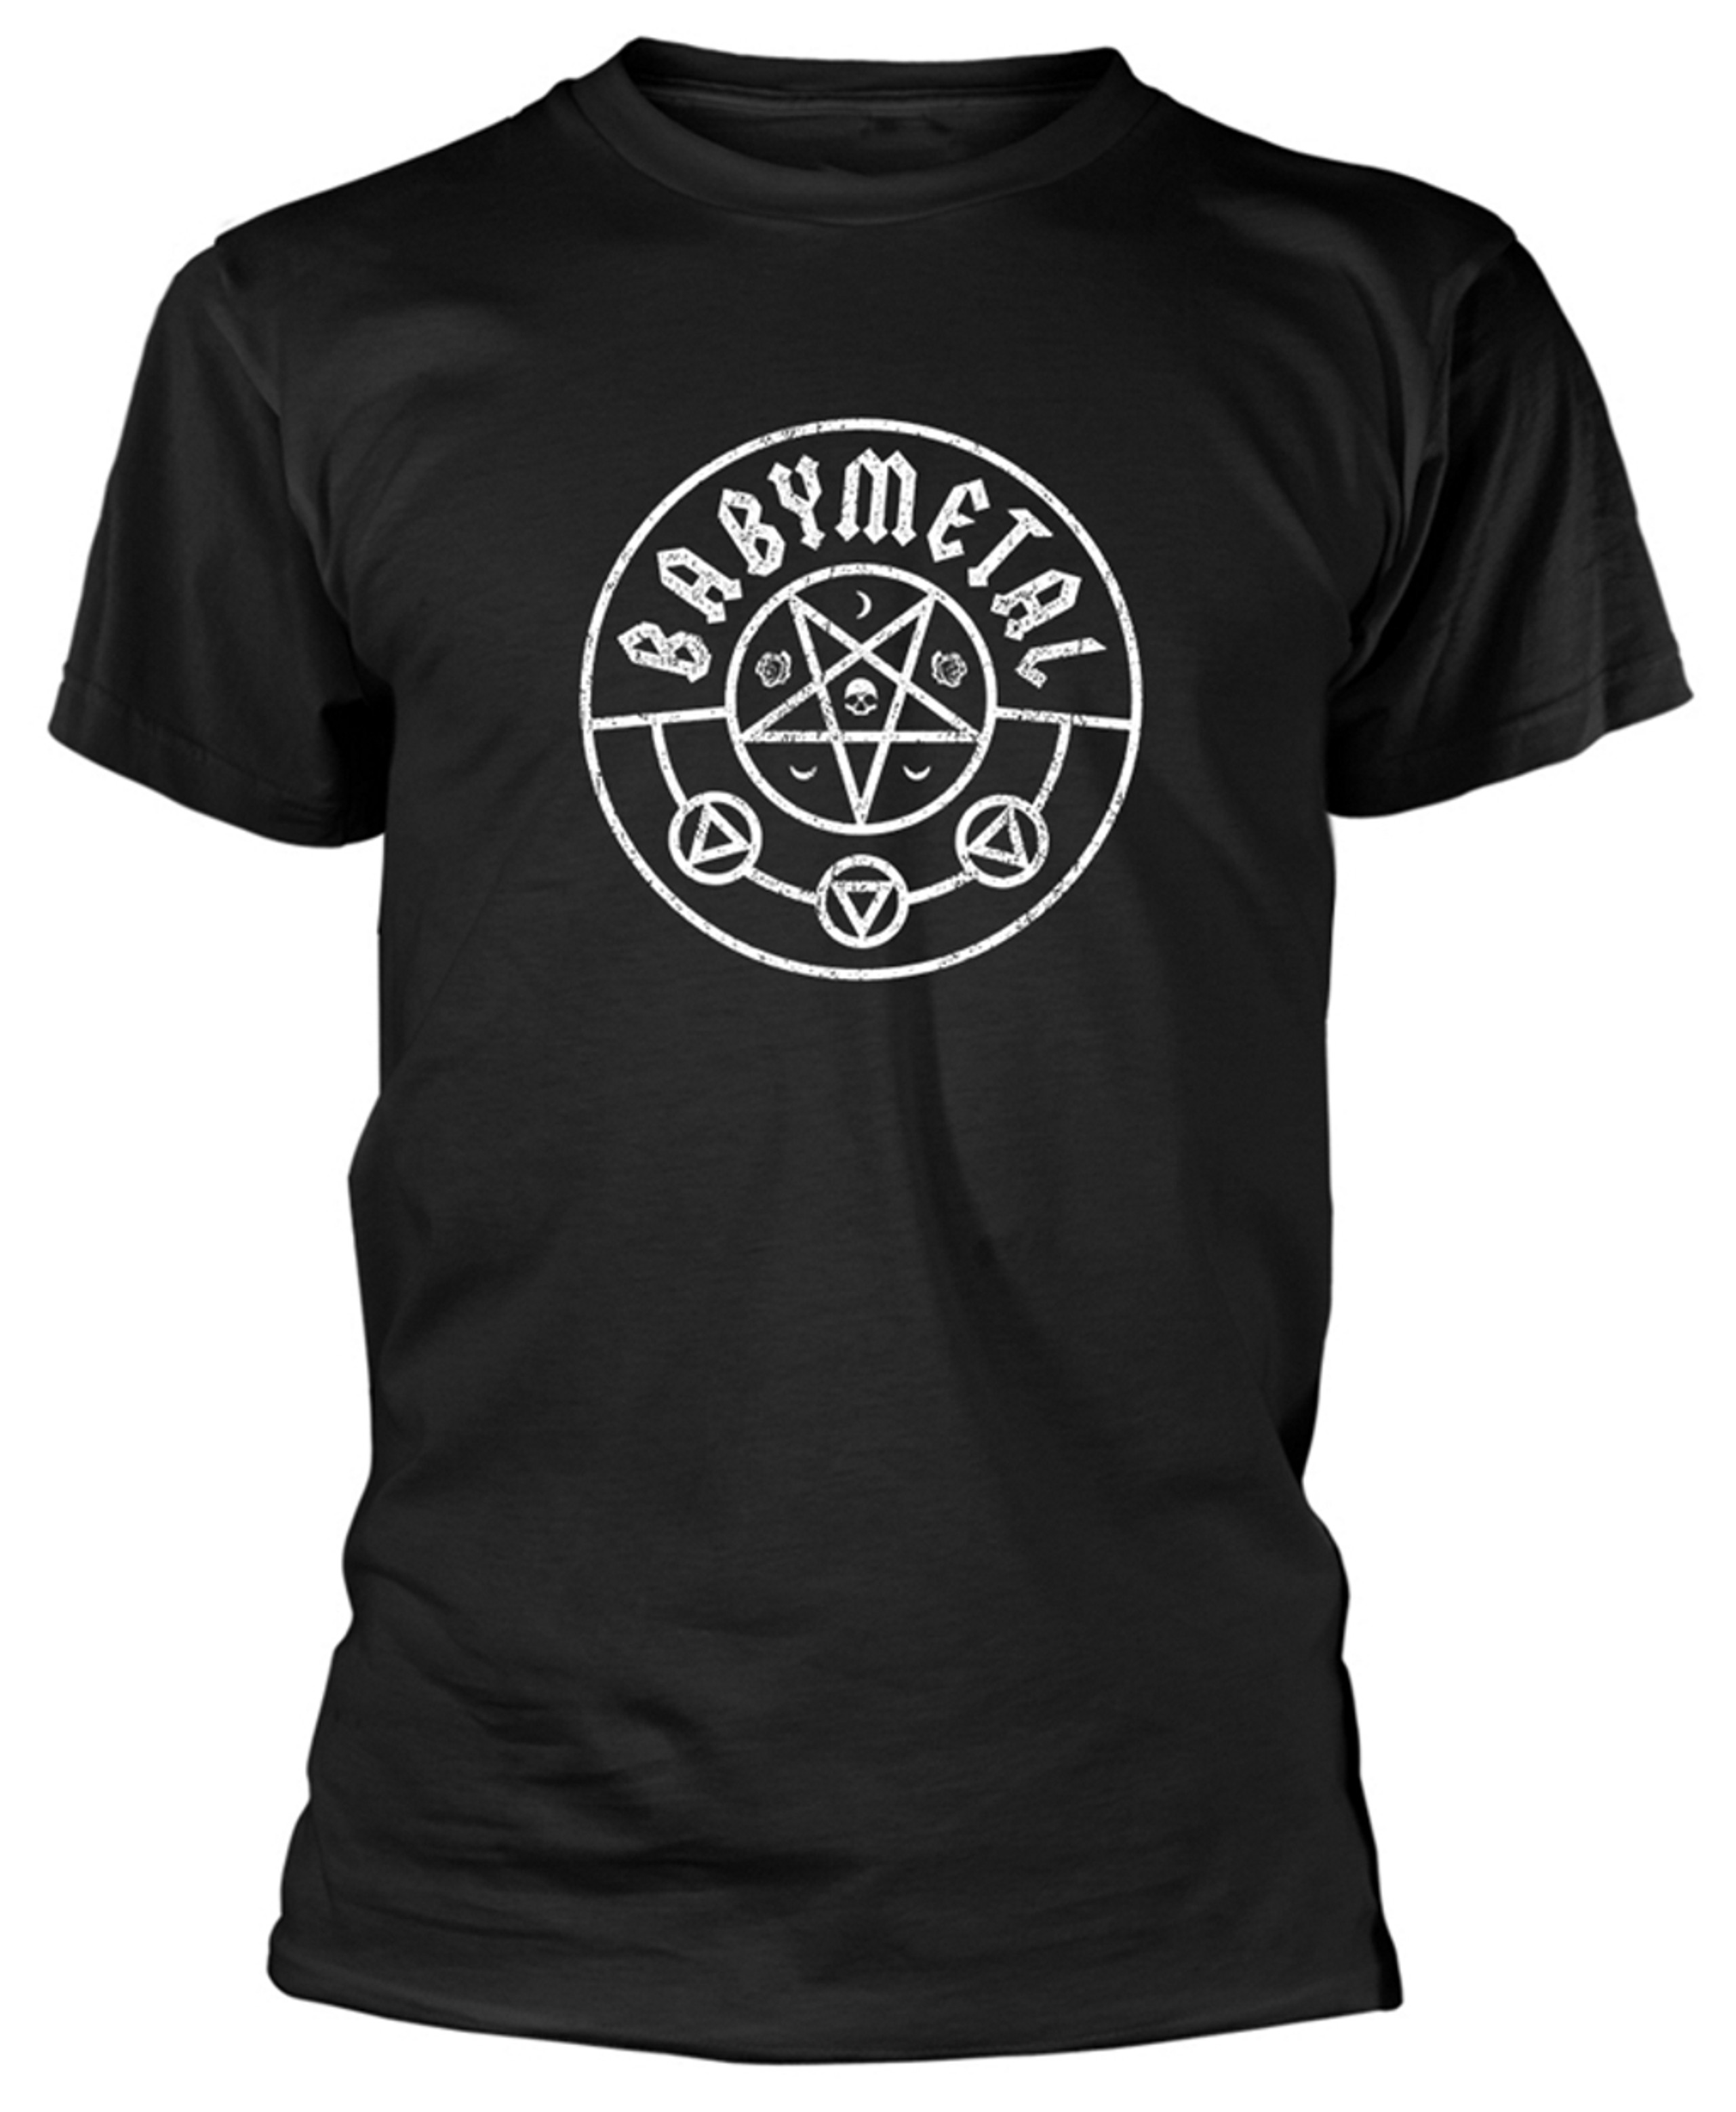 Babymetal 'Rosewolf' T-Shirt